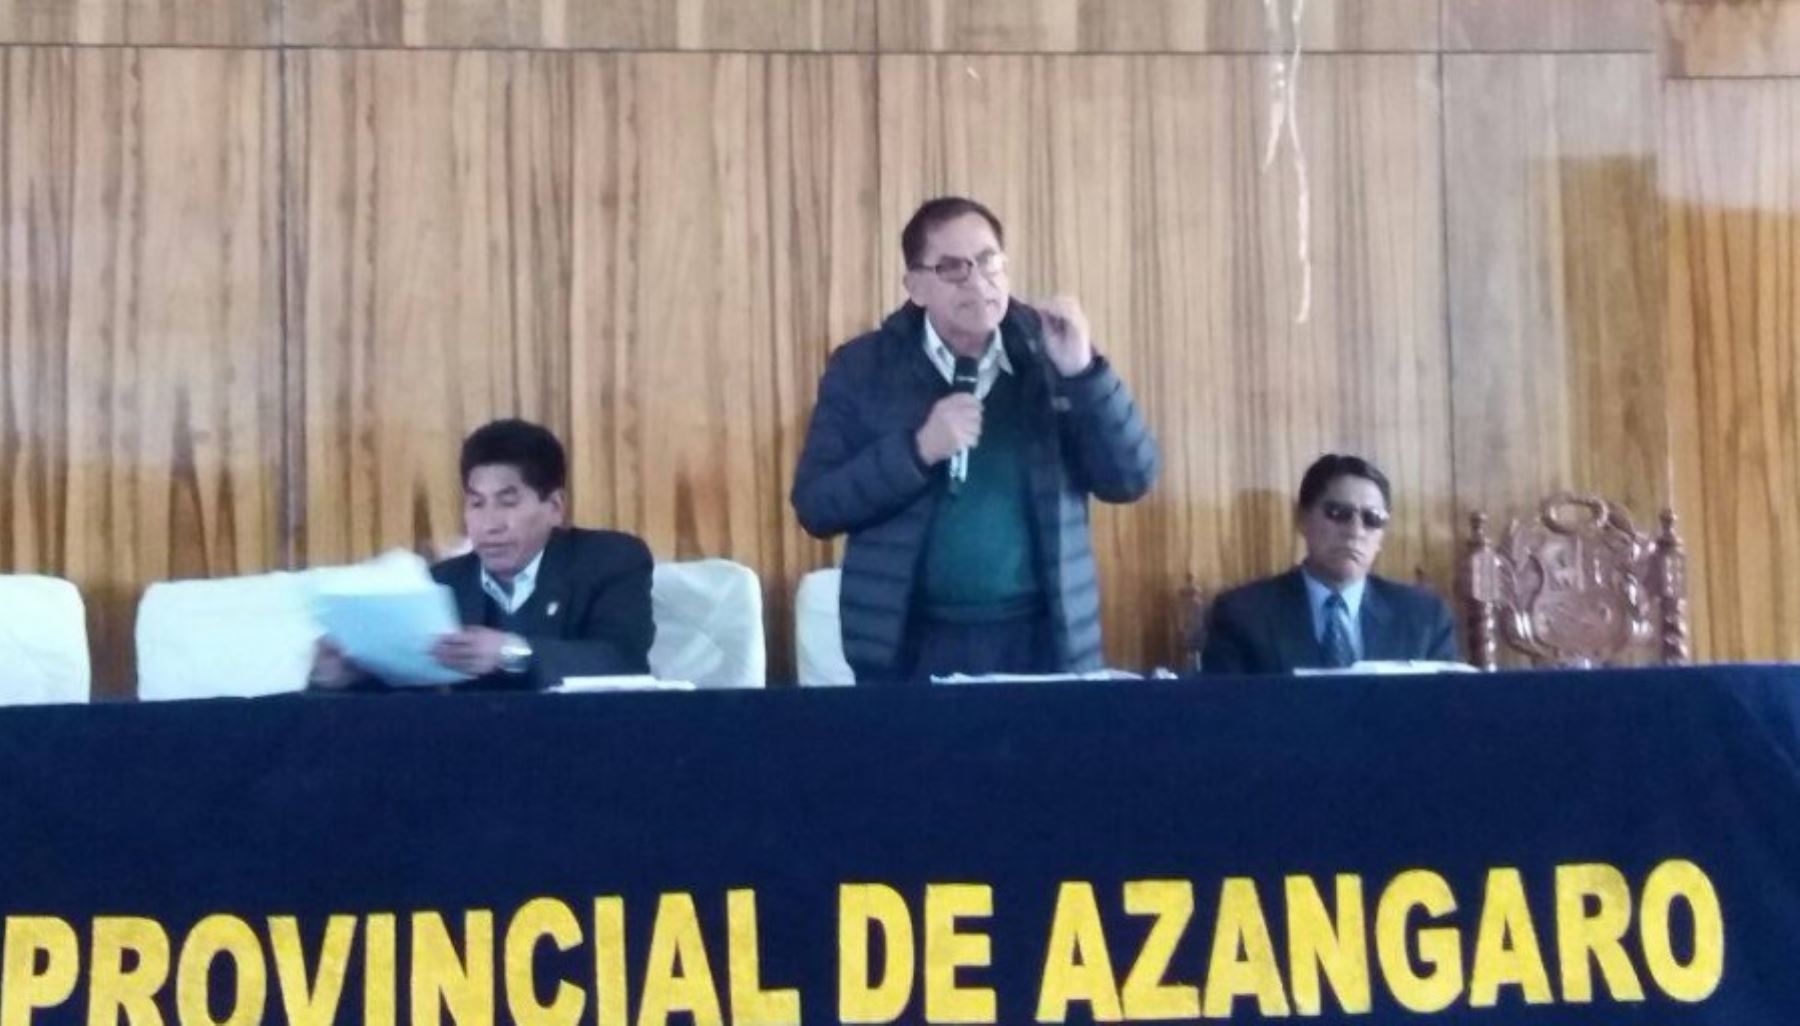 Legislador por Puno, Alberto Quintanilla, visitó la provincia de Azángaro, donde dialogó con autoridades locales y la población, en el marco de la Semana de Representación del Congreso de la República.